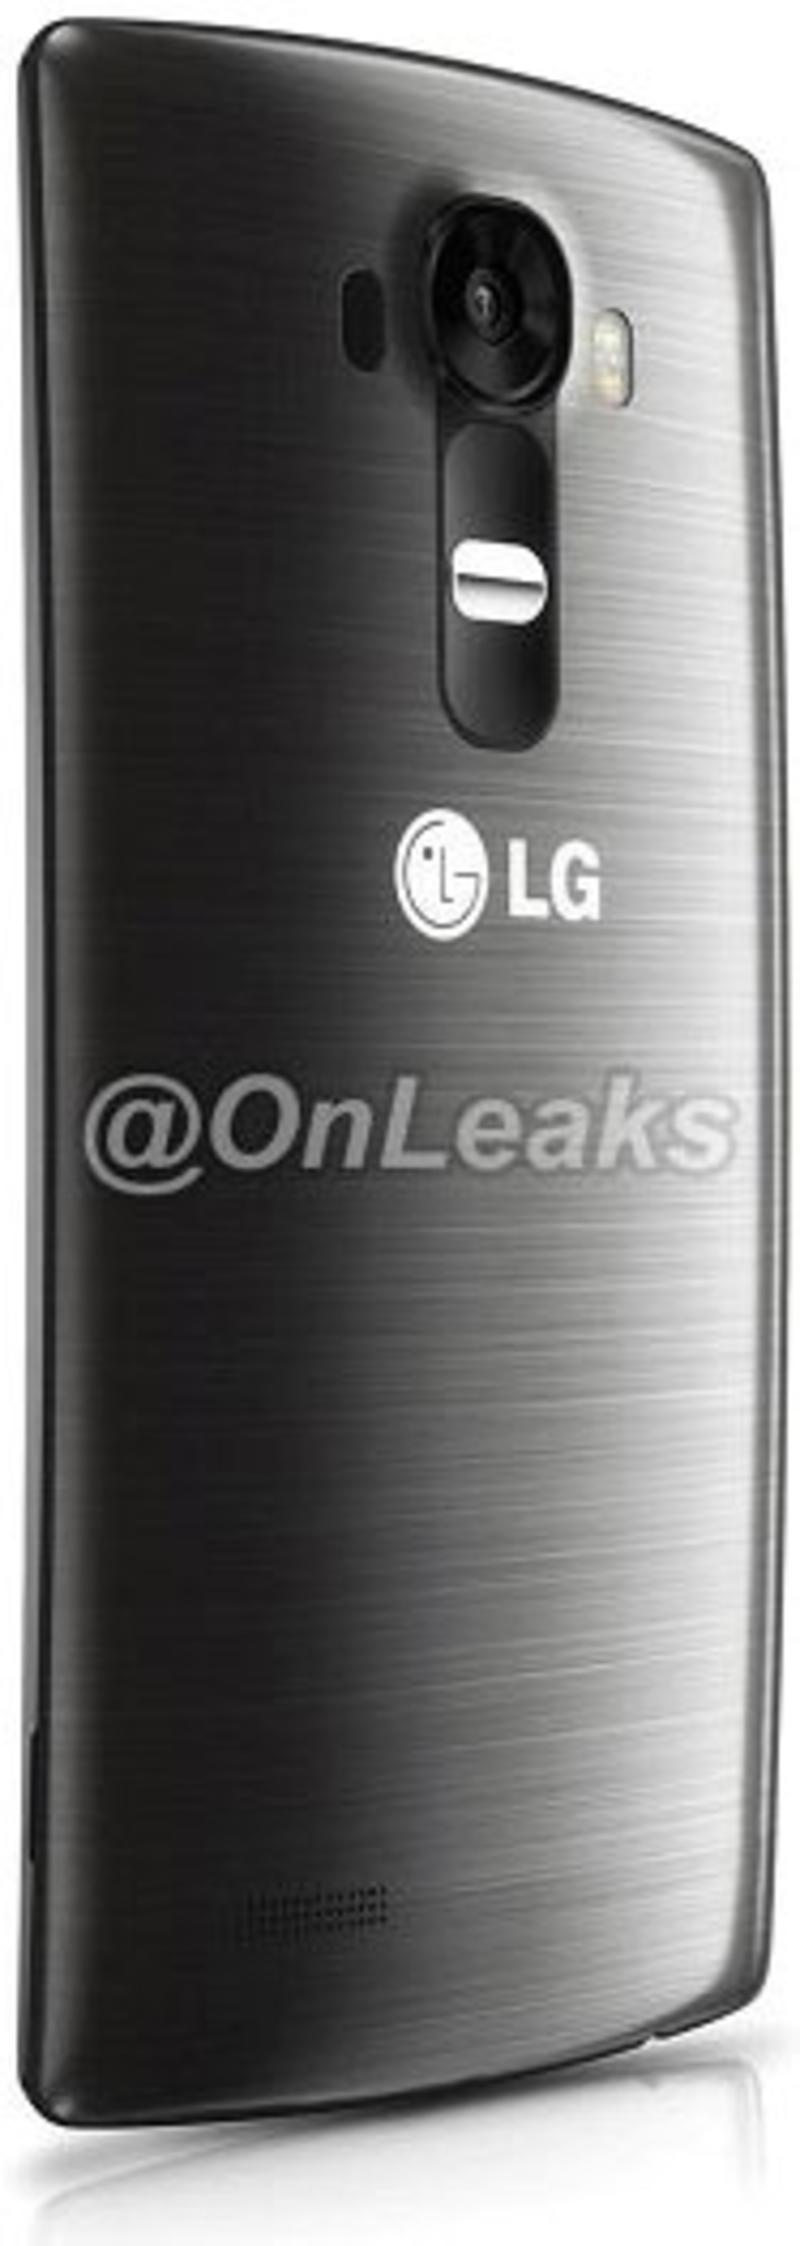 Рассекречен внешний вид флагмана LG G4 / mylgphones.com